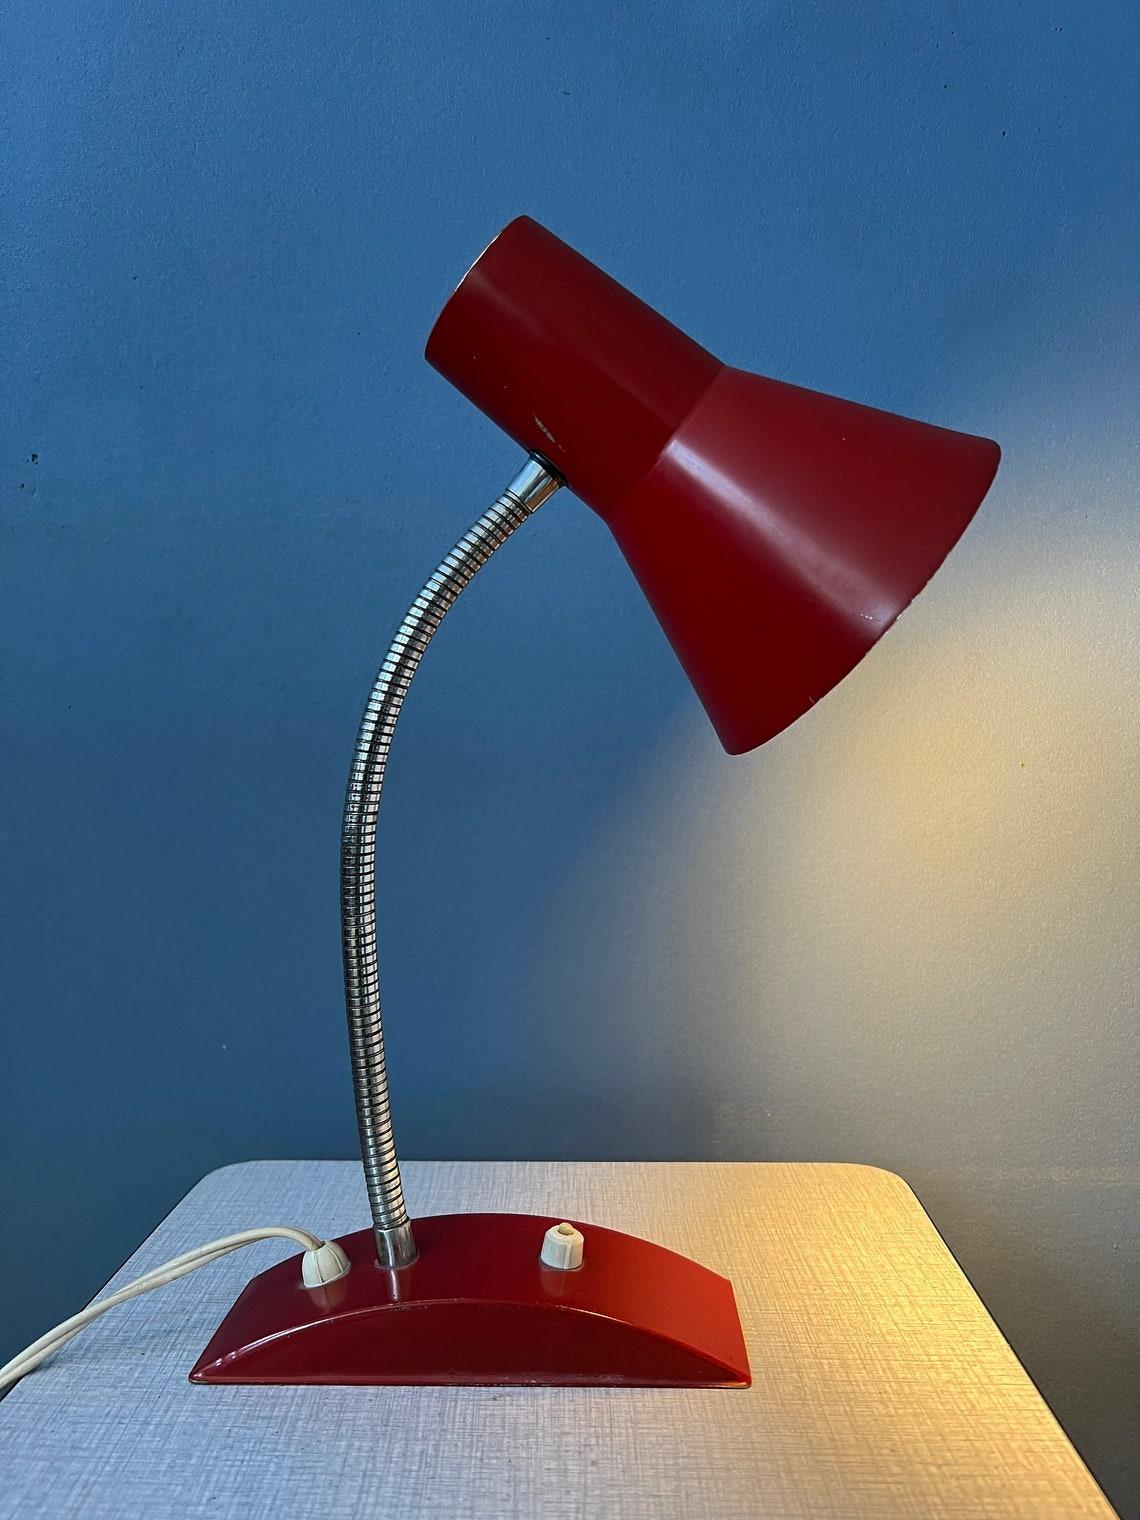 Lampe de table rouge de l'ère spatiale avec bras métallique flexible. Le bras et l'abat-jour peuvent être positionnés de la manière souhaitée. La lampe est en métal. La lampe nécessite une ampoule E27/26 (standard) et dispose actuellement d'une